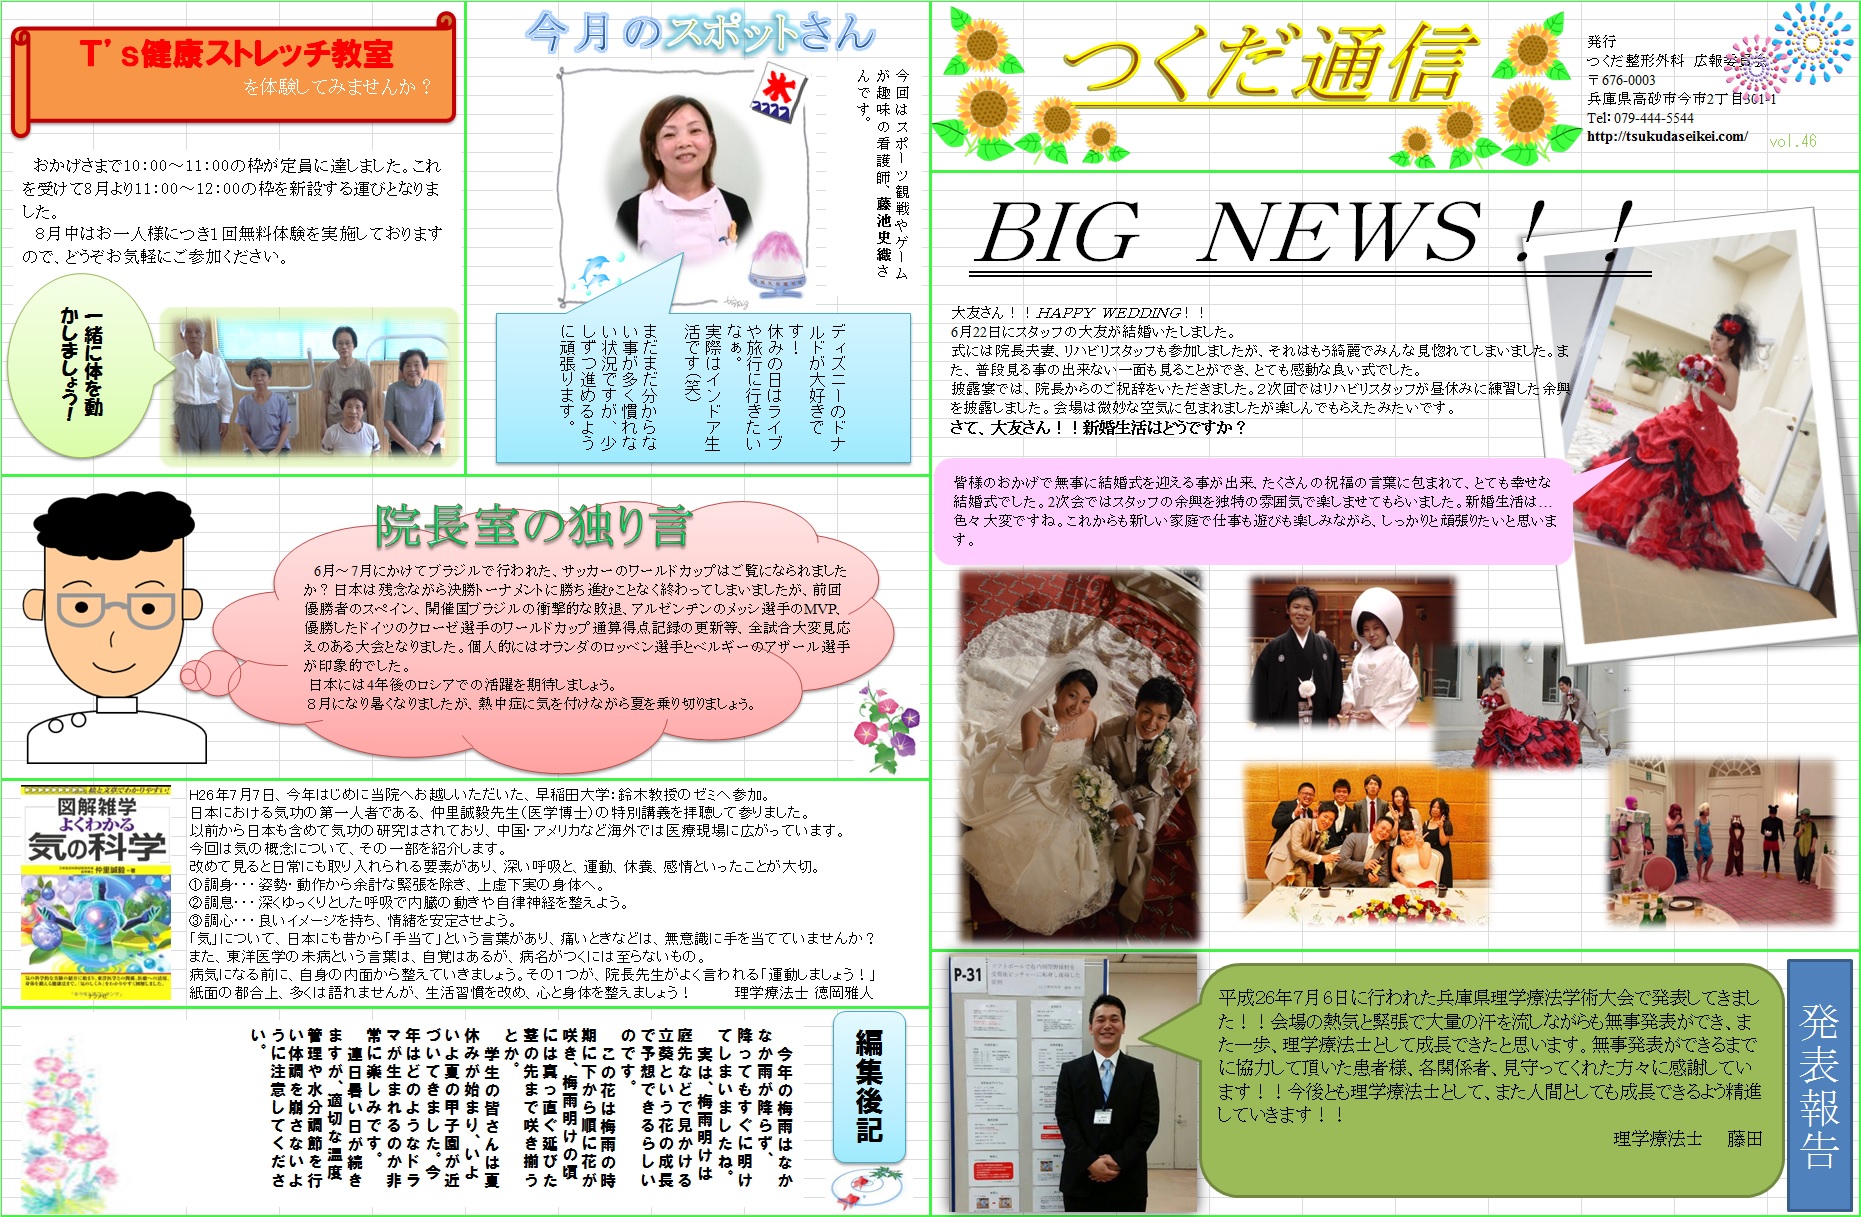 http://www.tsukudaseikei.com/news/46%E5%8F%B7.jpg